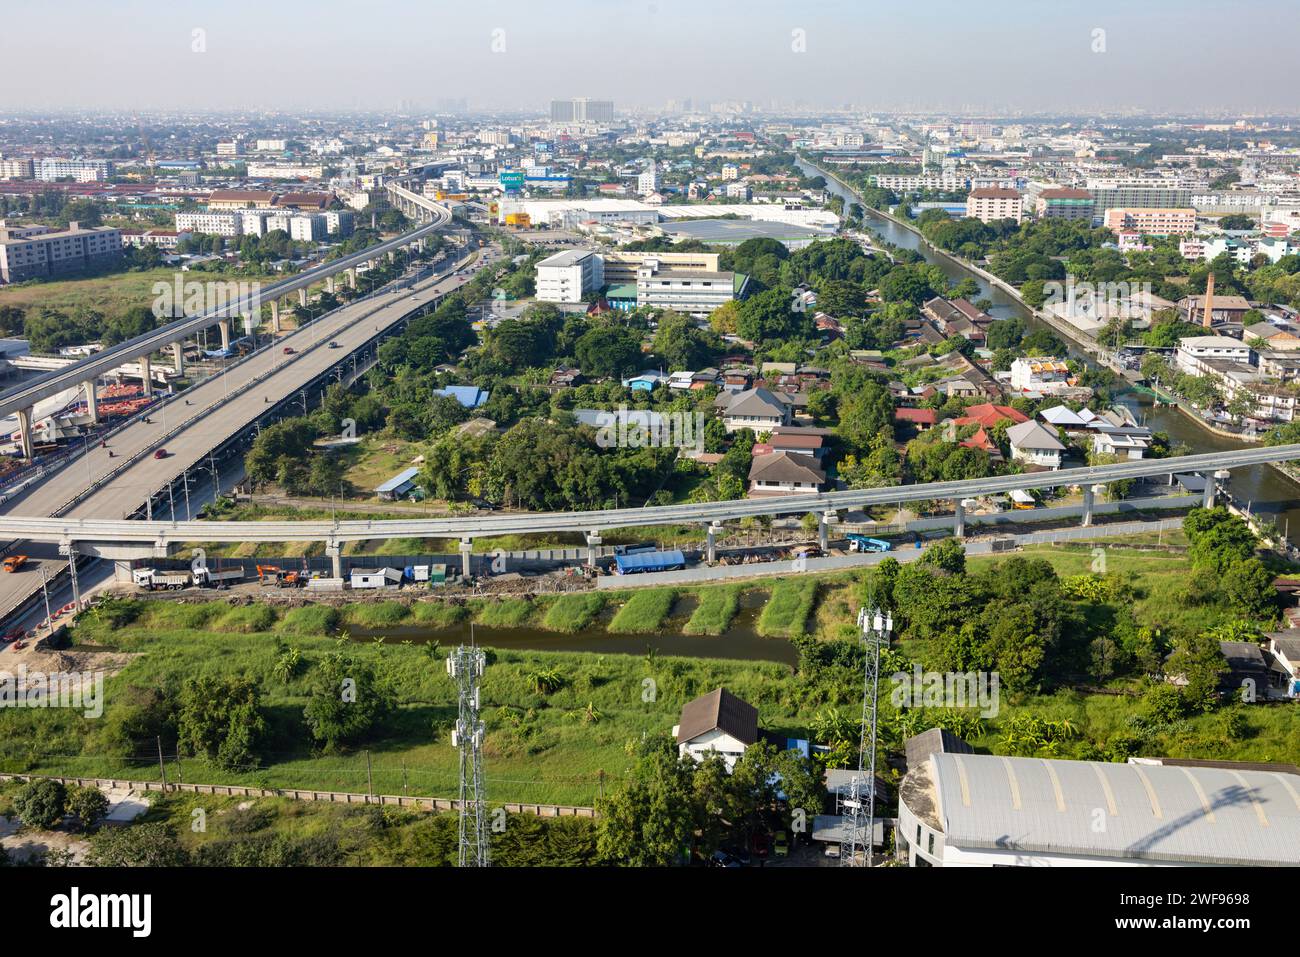 Ein Blick über den Kopf, der das Stadtbild Bangkoks unter sich mit einer belebten Autobahn, die zwischen hoch aufragenden Gebäuden und der belebten Stadtlandschaft schlängelt, erfasst. Stockfoto